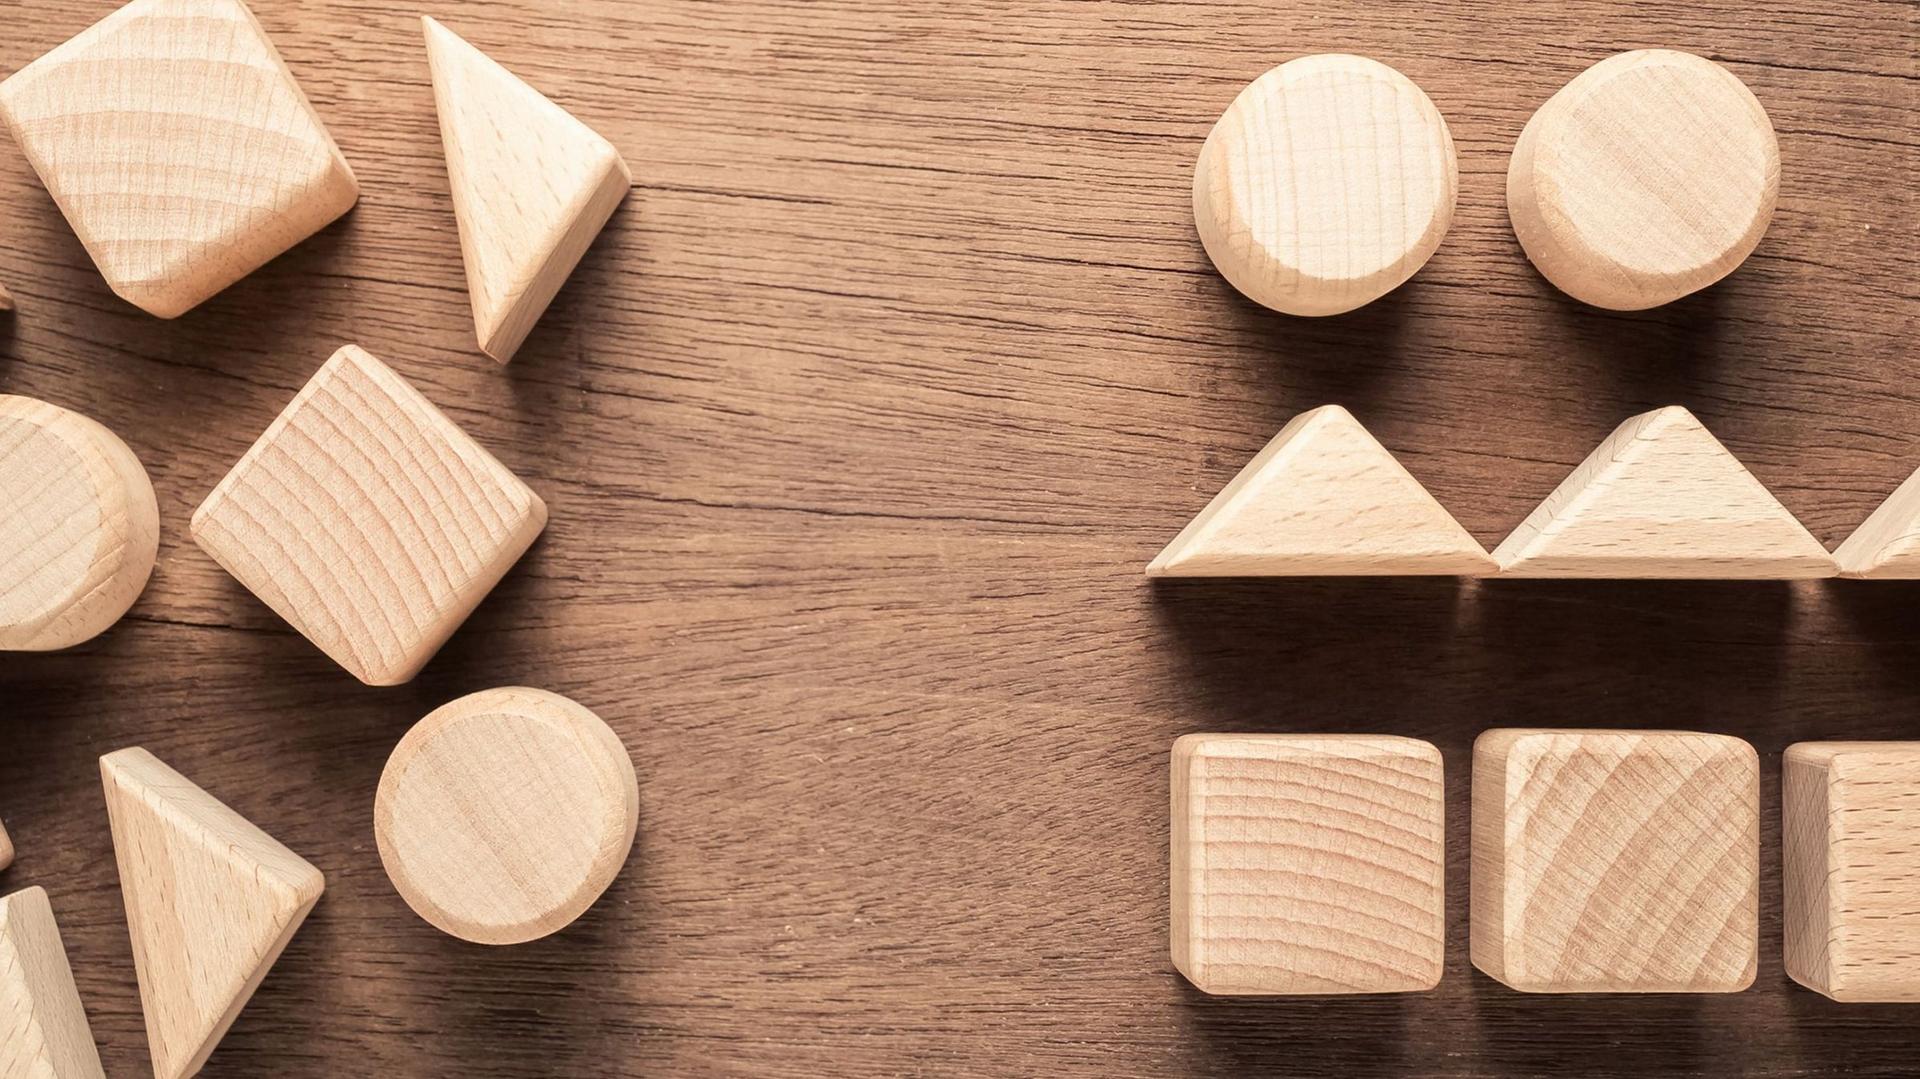 Auf einem Holztisch liegen sortierte und unsortierte Holzklötze in verschiedene geometrischen Formen.